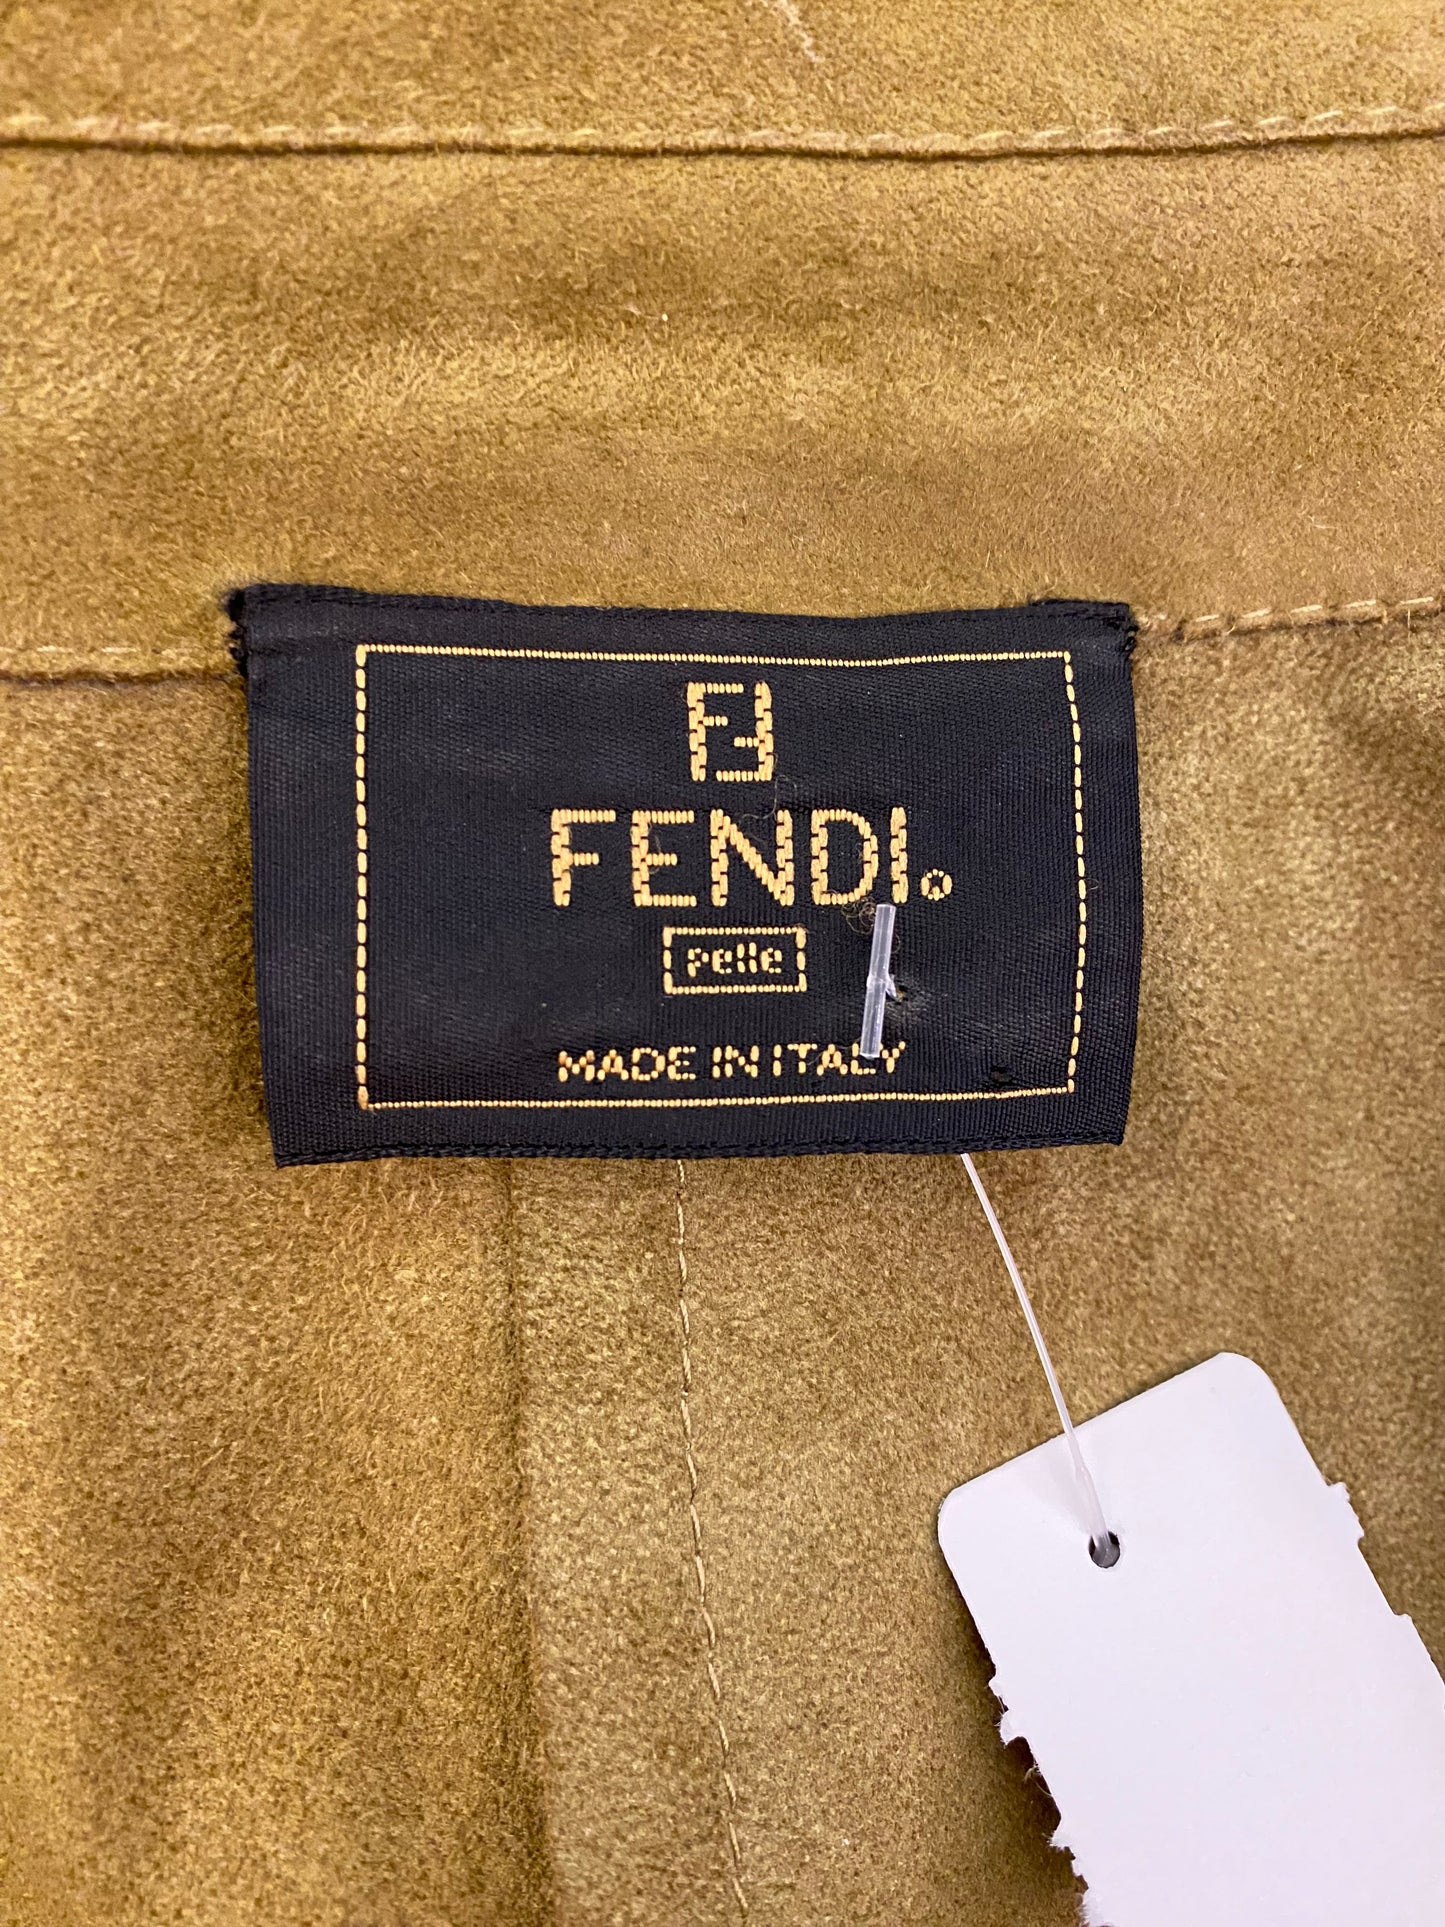 FENDI Vintage Suede Leather Shirt Size M/ L